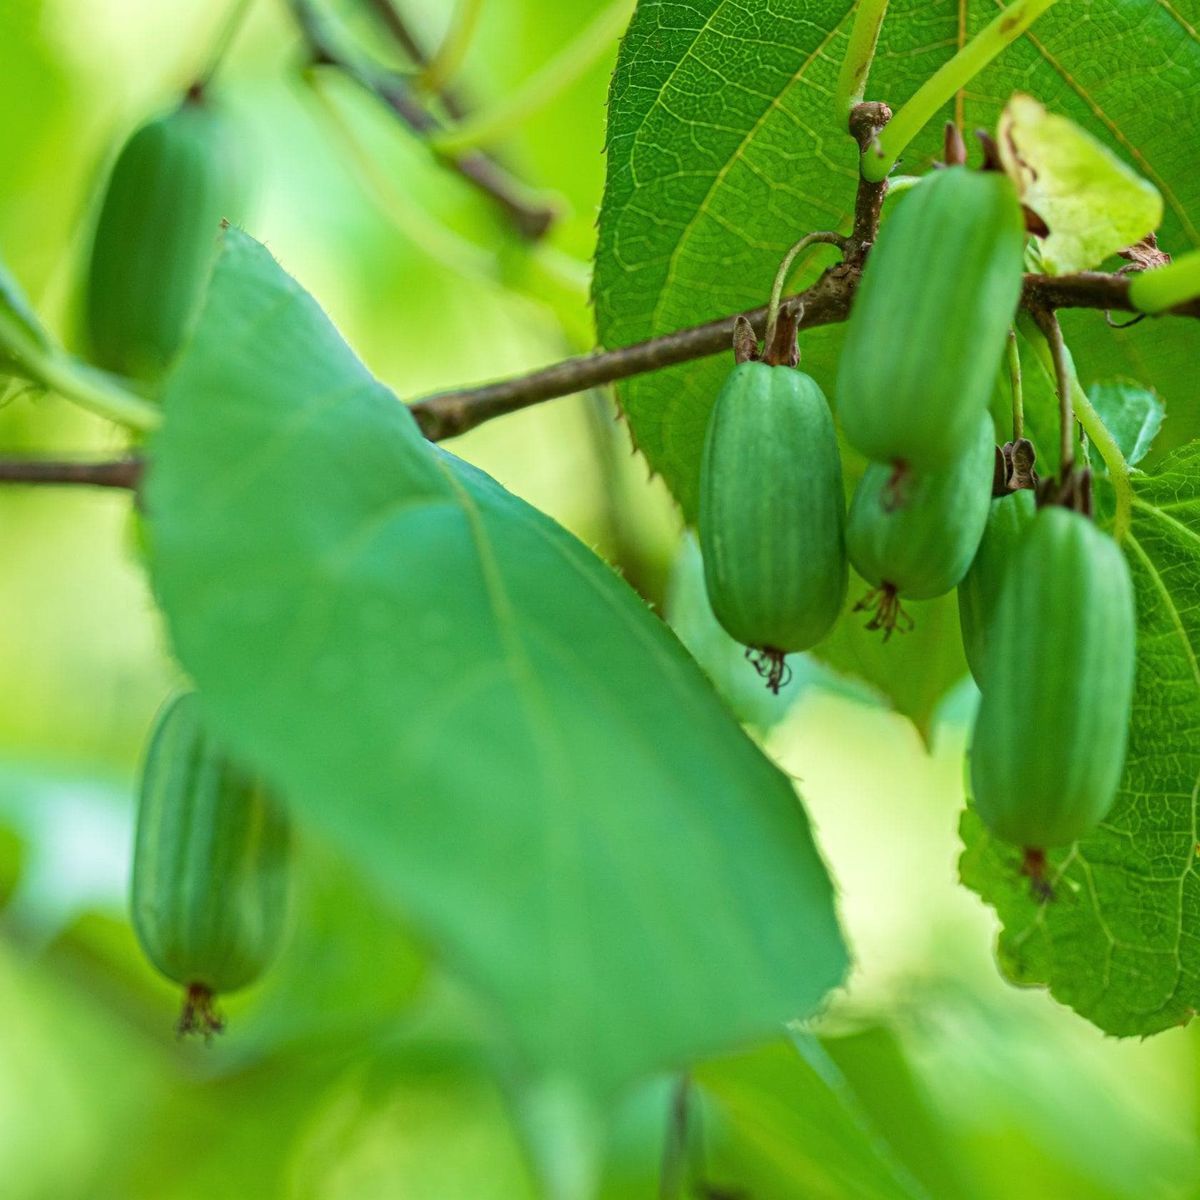 ackerbaum Sibirische Kiwi Pflanze - Vitakola kaufen